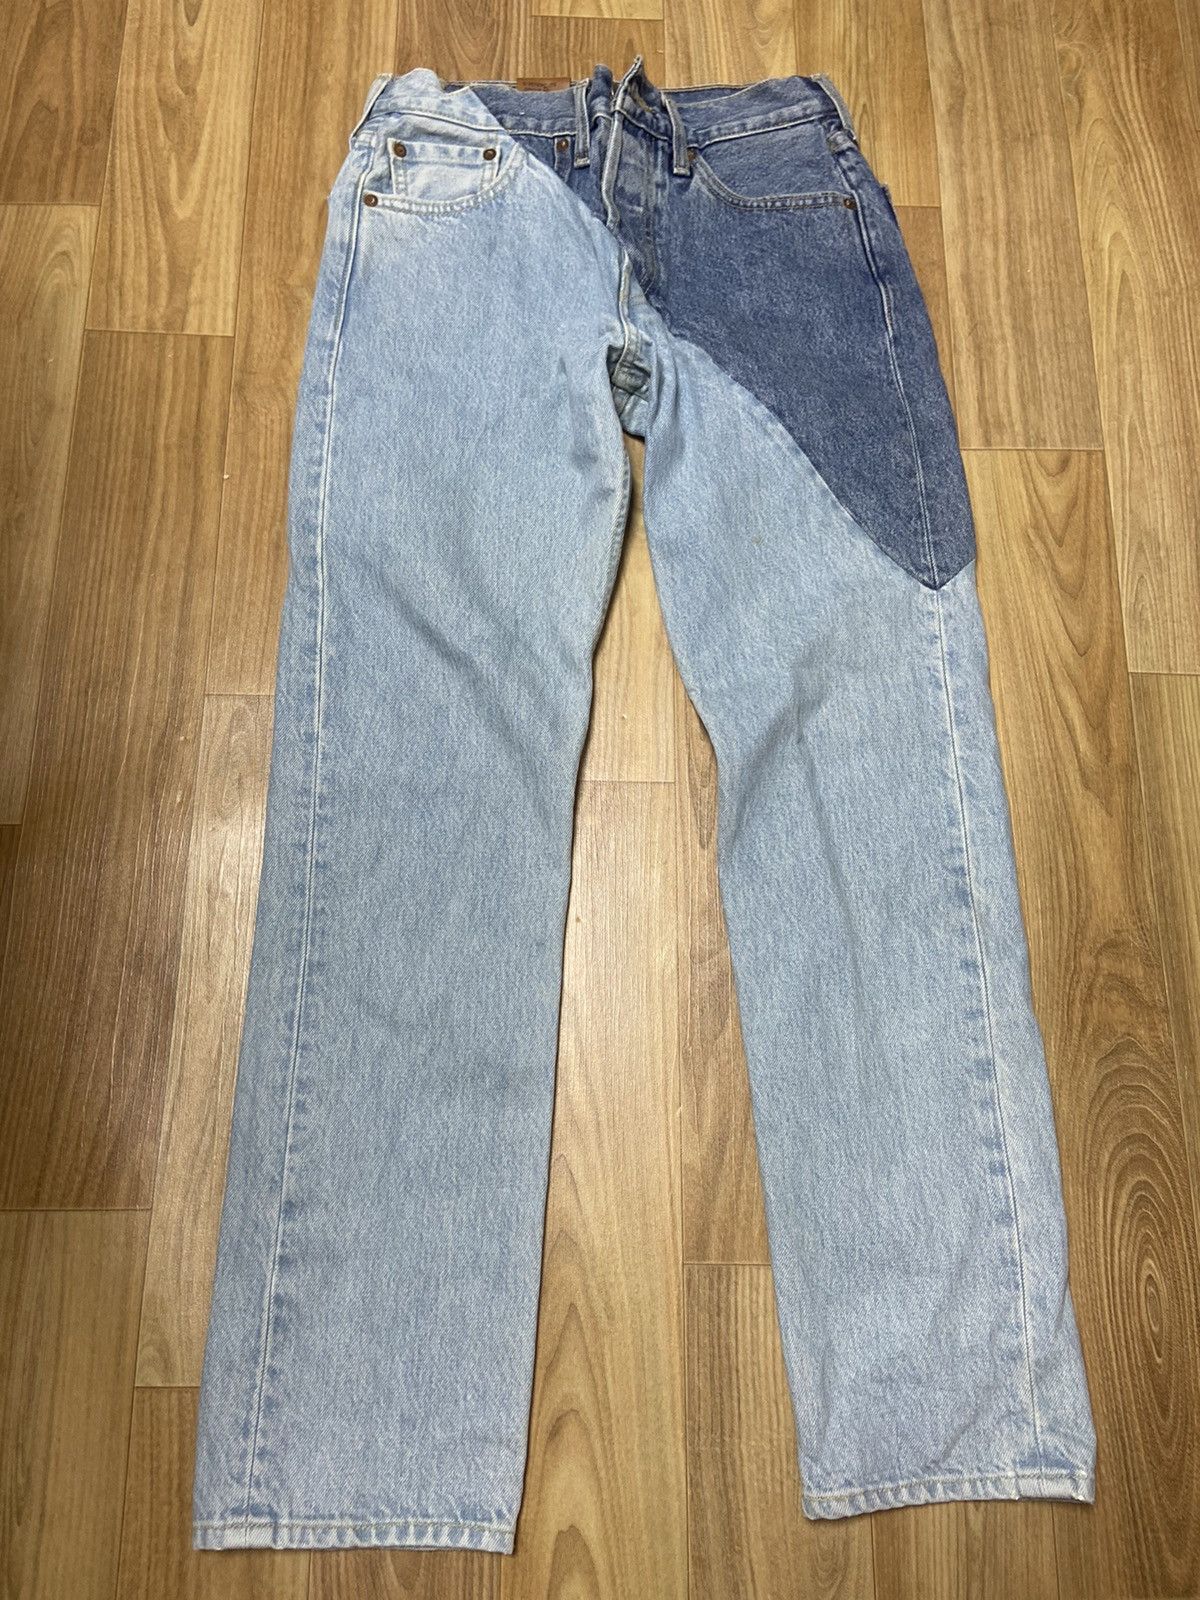 Vetements S Vetements reworked cut up jeans Denim pants | Grailed